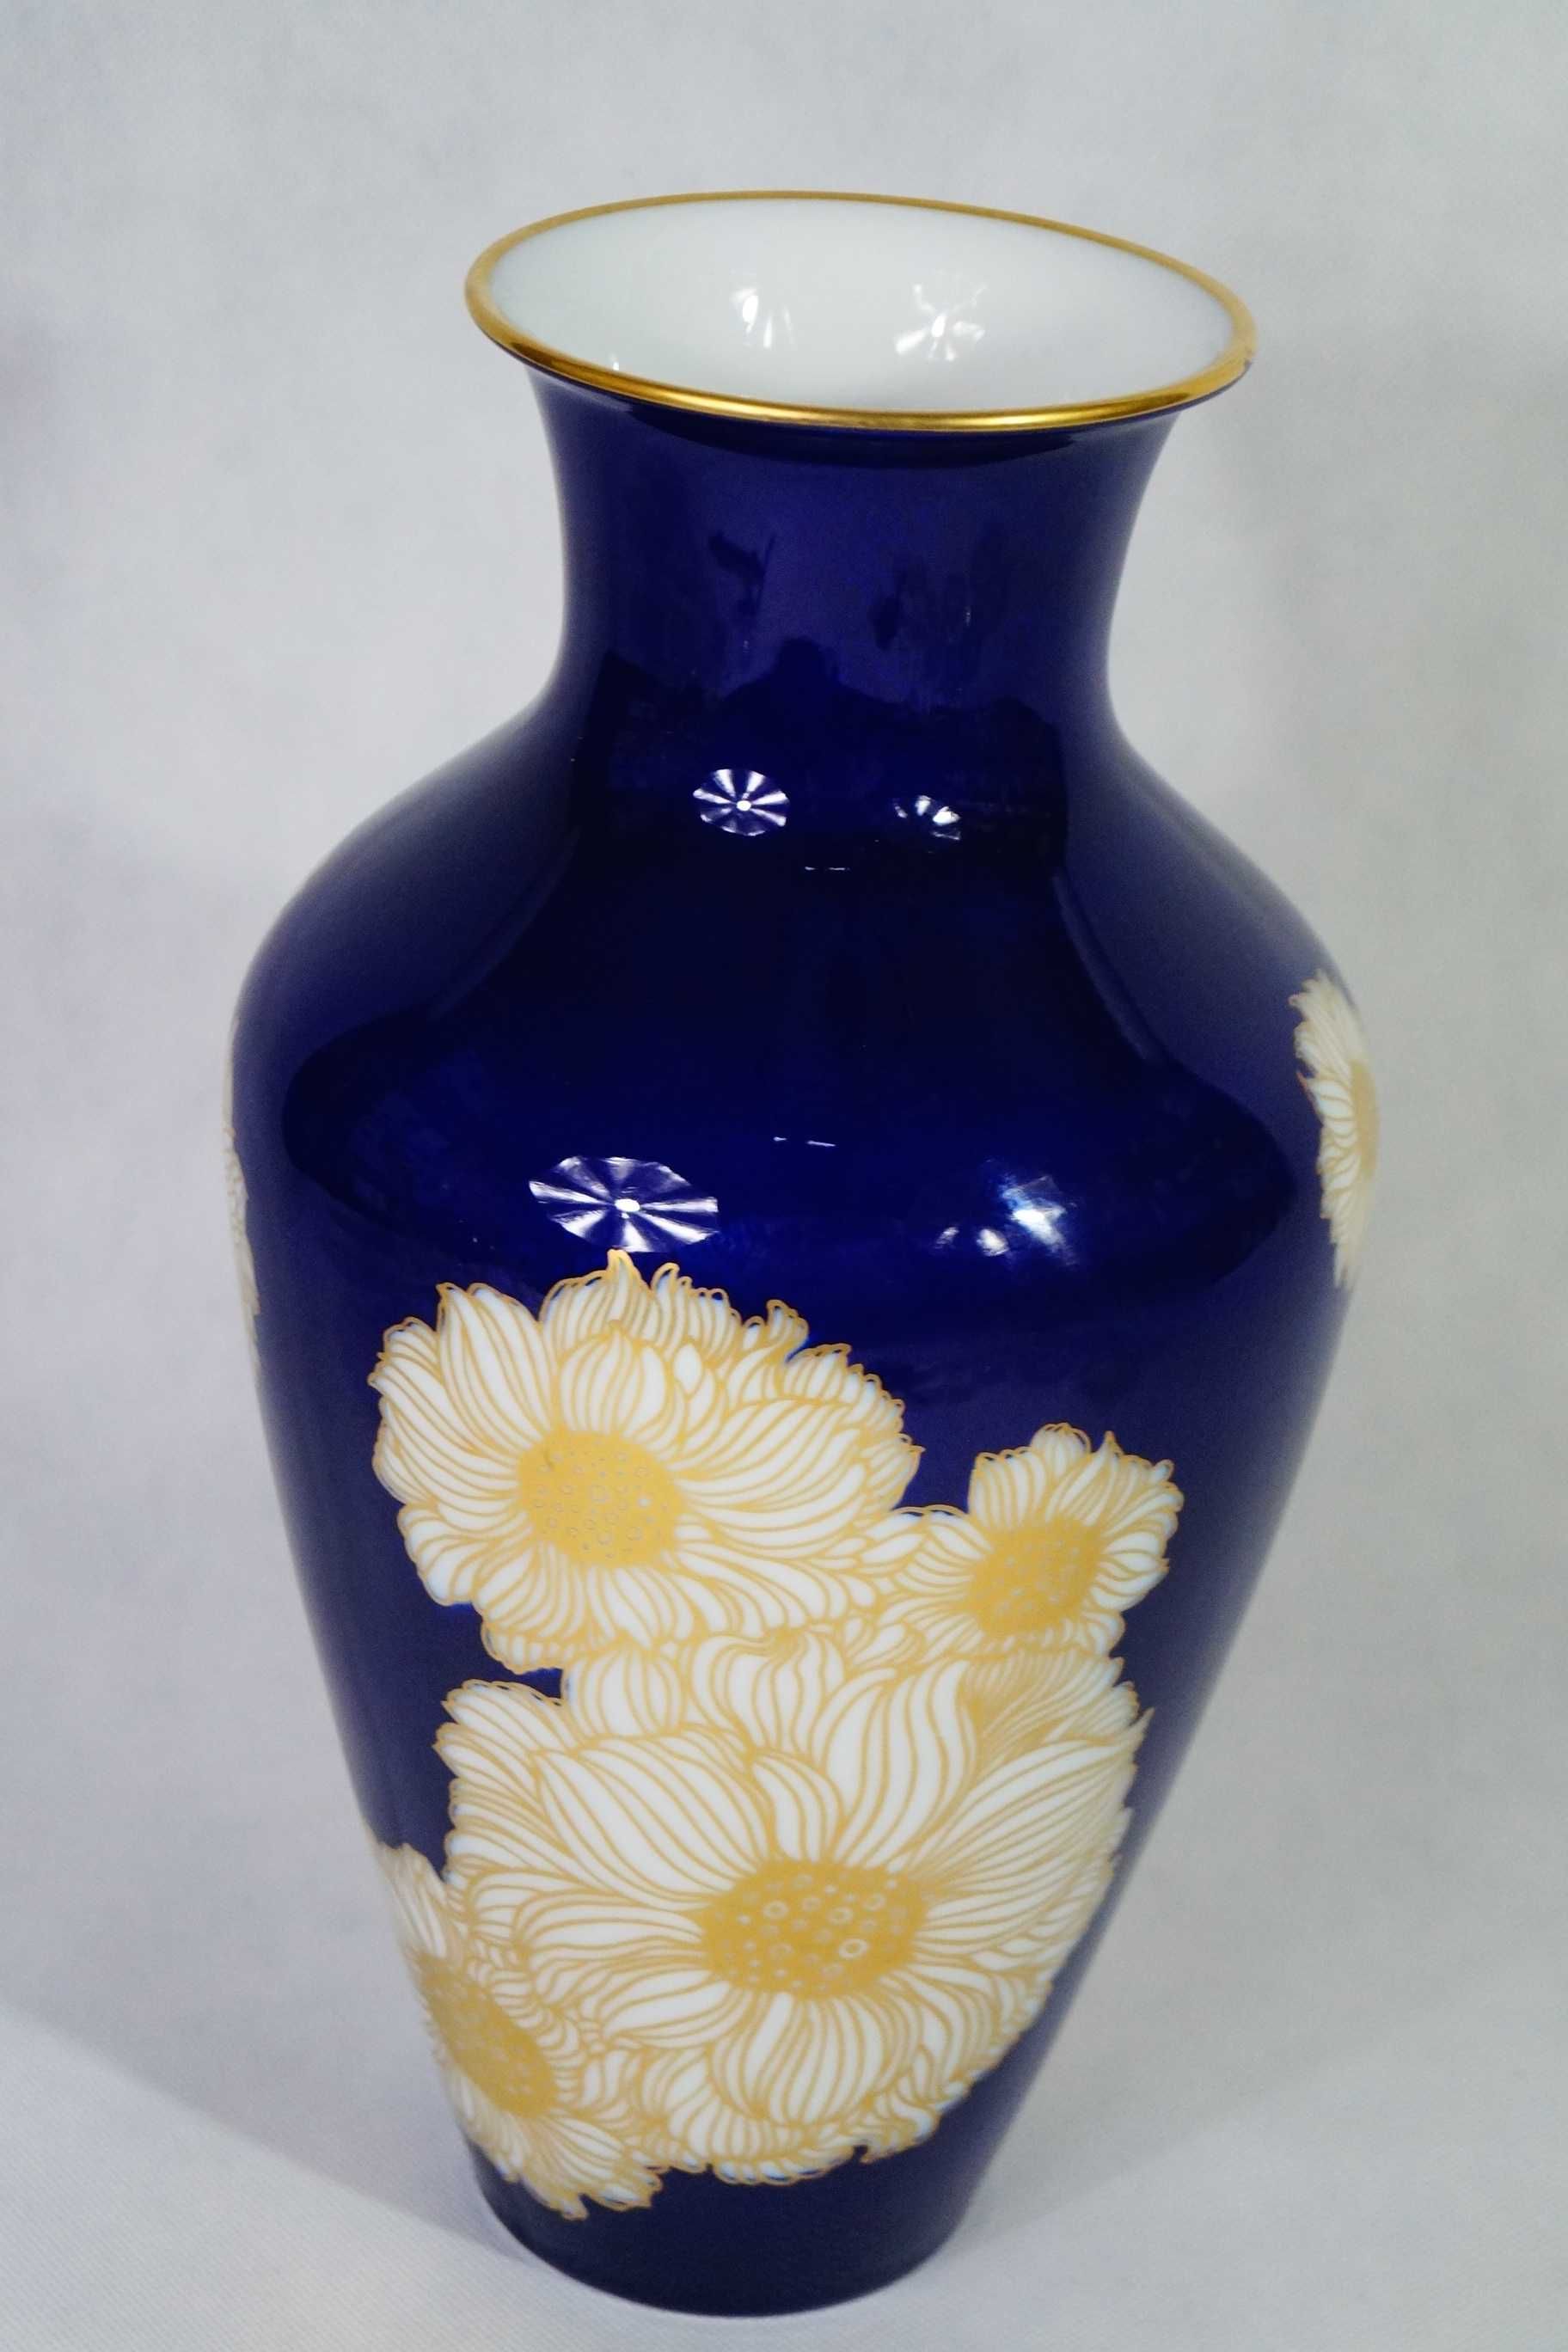 Duży porcelanowy wazon kobaltowy zdobiony dekoracją oraz złoceniami